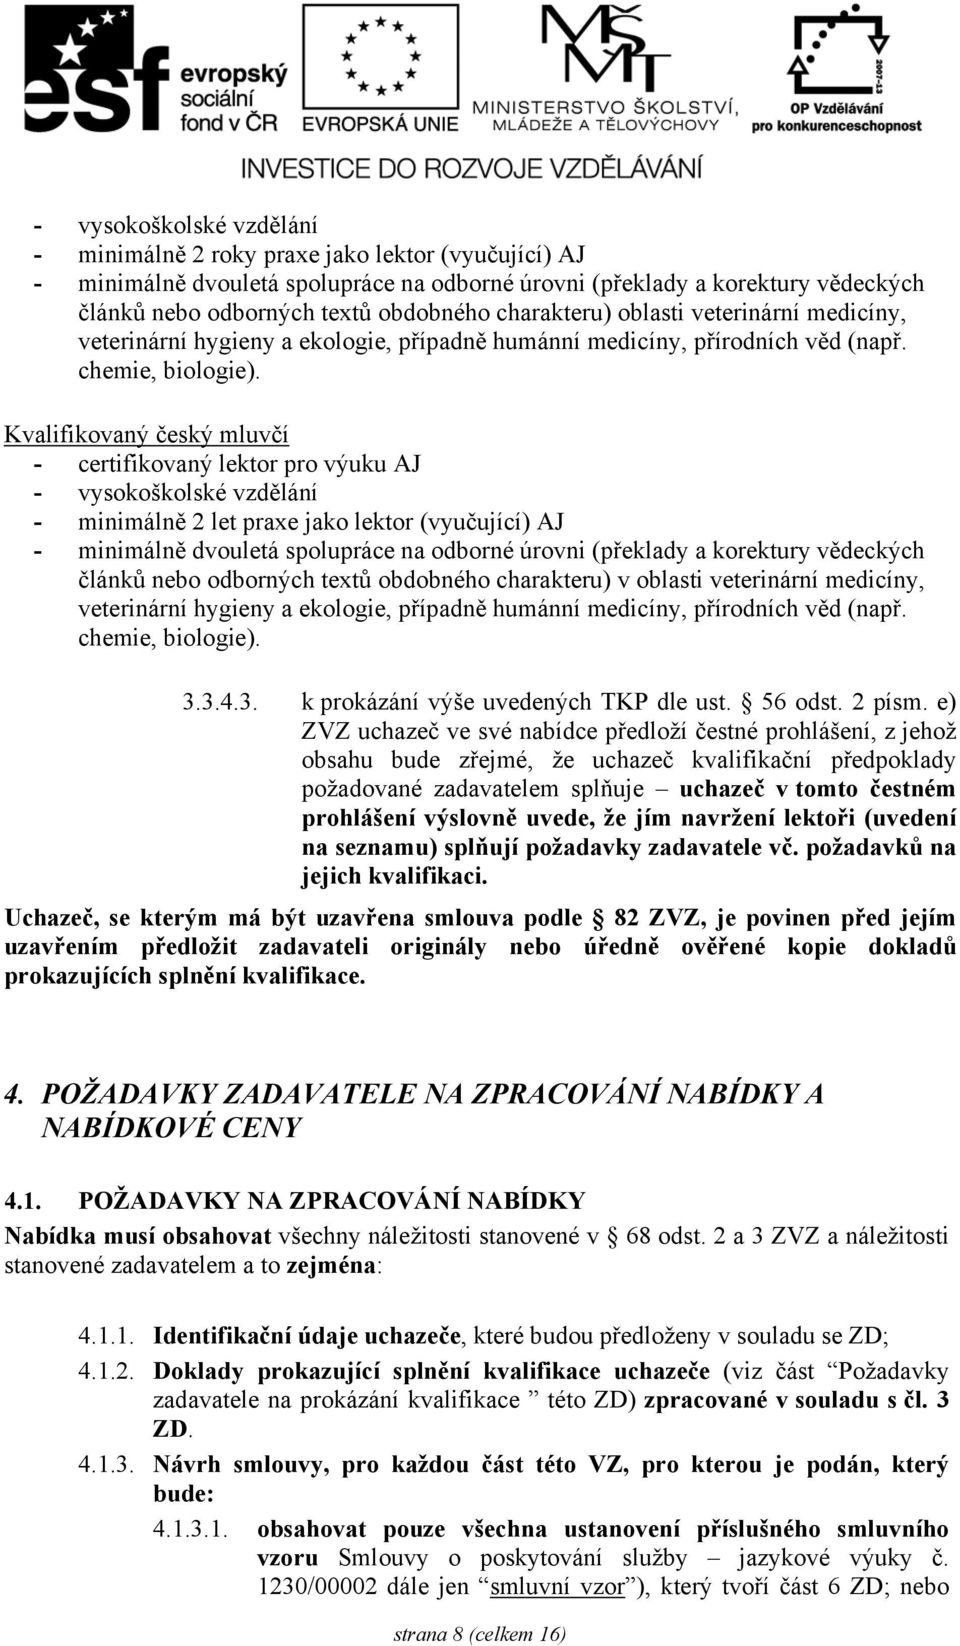 Kvalifikovaný český mluvčí - certifikovaný lektor pro výuku AJ - vysokoškolské vzdělání - minimálně 2 let praxe jako lektor (vyučující) AJ - minimálně dvouletá spolupráce na odborné úrovni (překlady